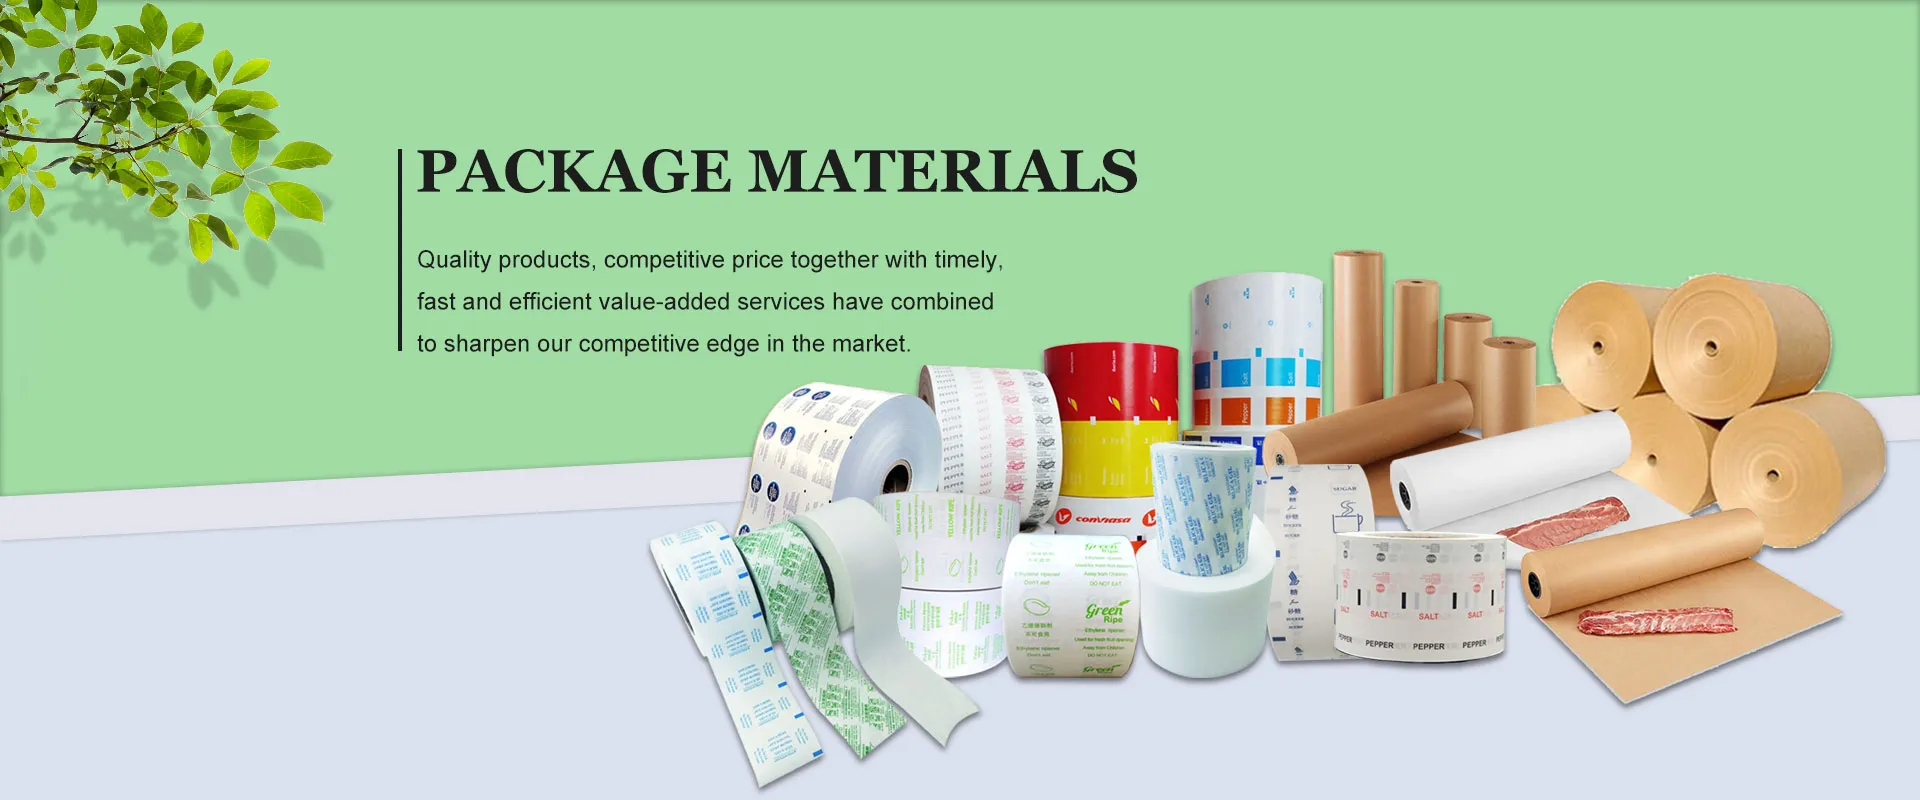 Fábrica de Materiais de Embalagens